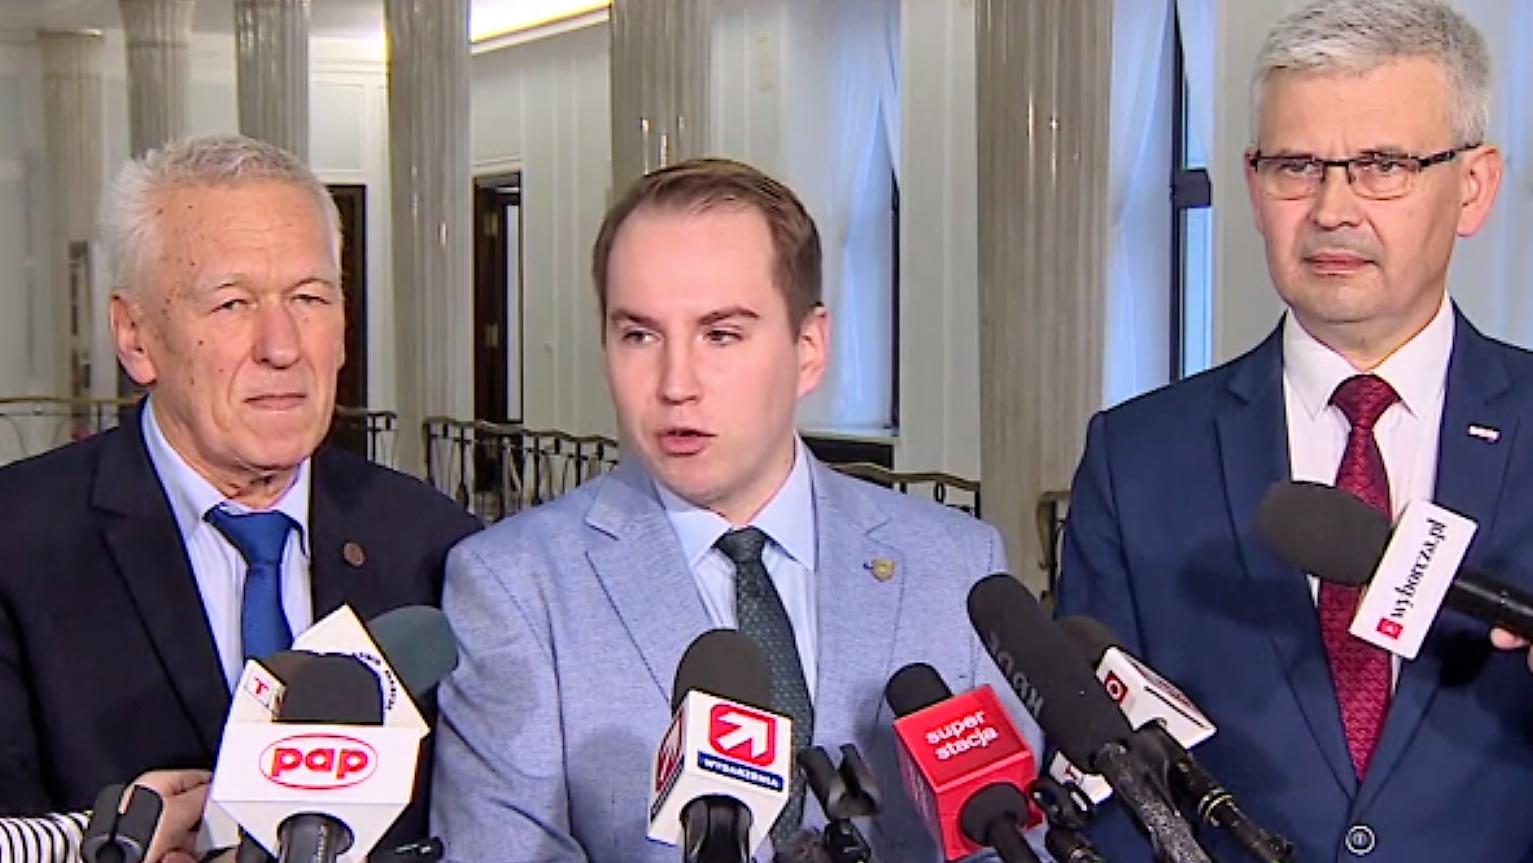 Kornel Morawiecki stoi obok Adama Andruszkiewicza podczas konferencji prasowej w Sejmie